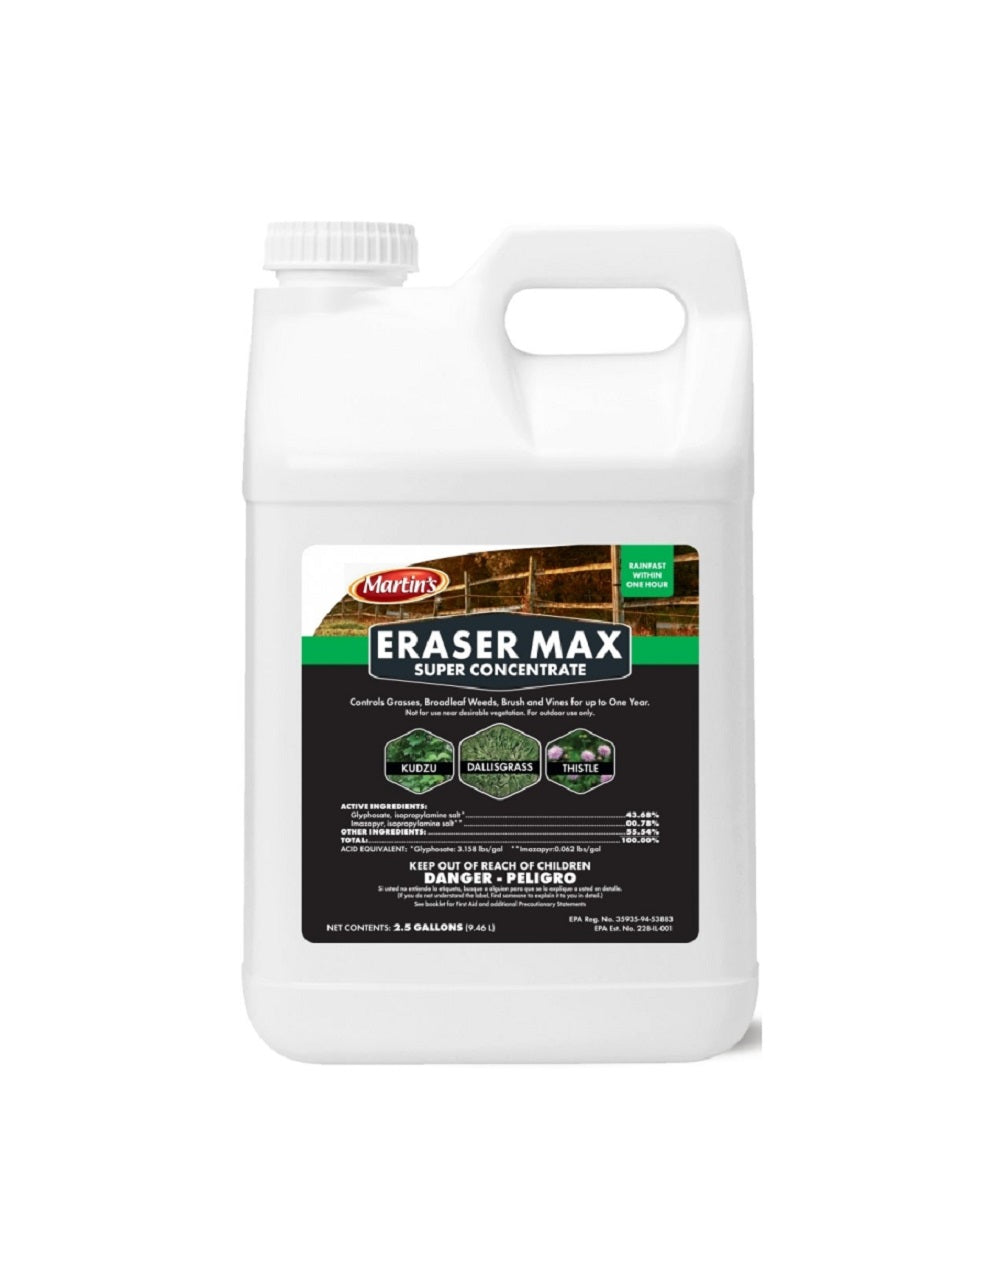 Martin's 82002490 Eraser Max Super Concentrate Herbicide, 2.5 Gallon